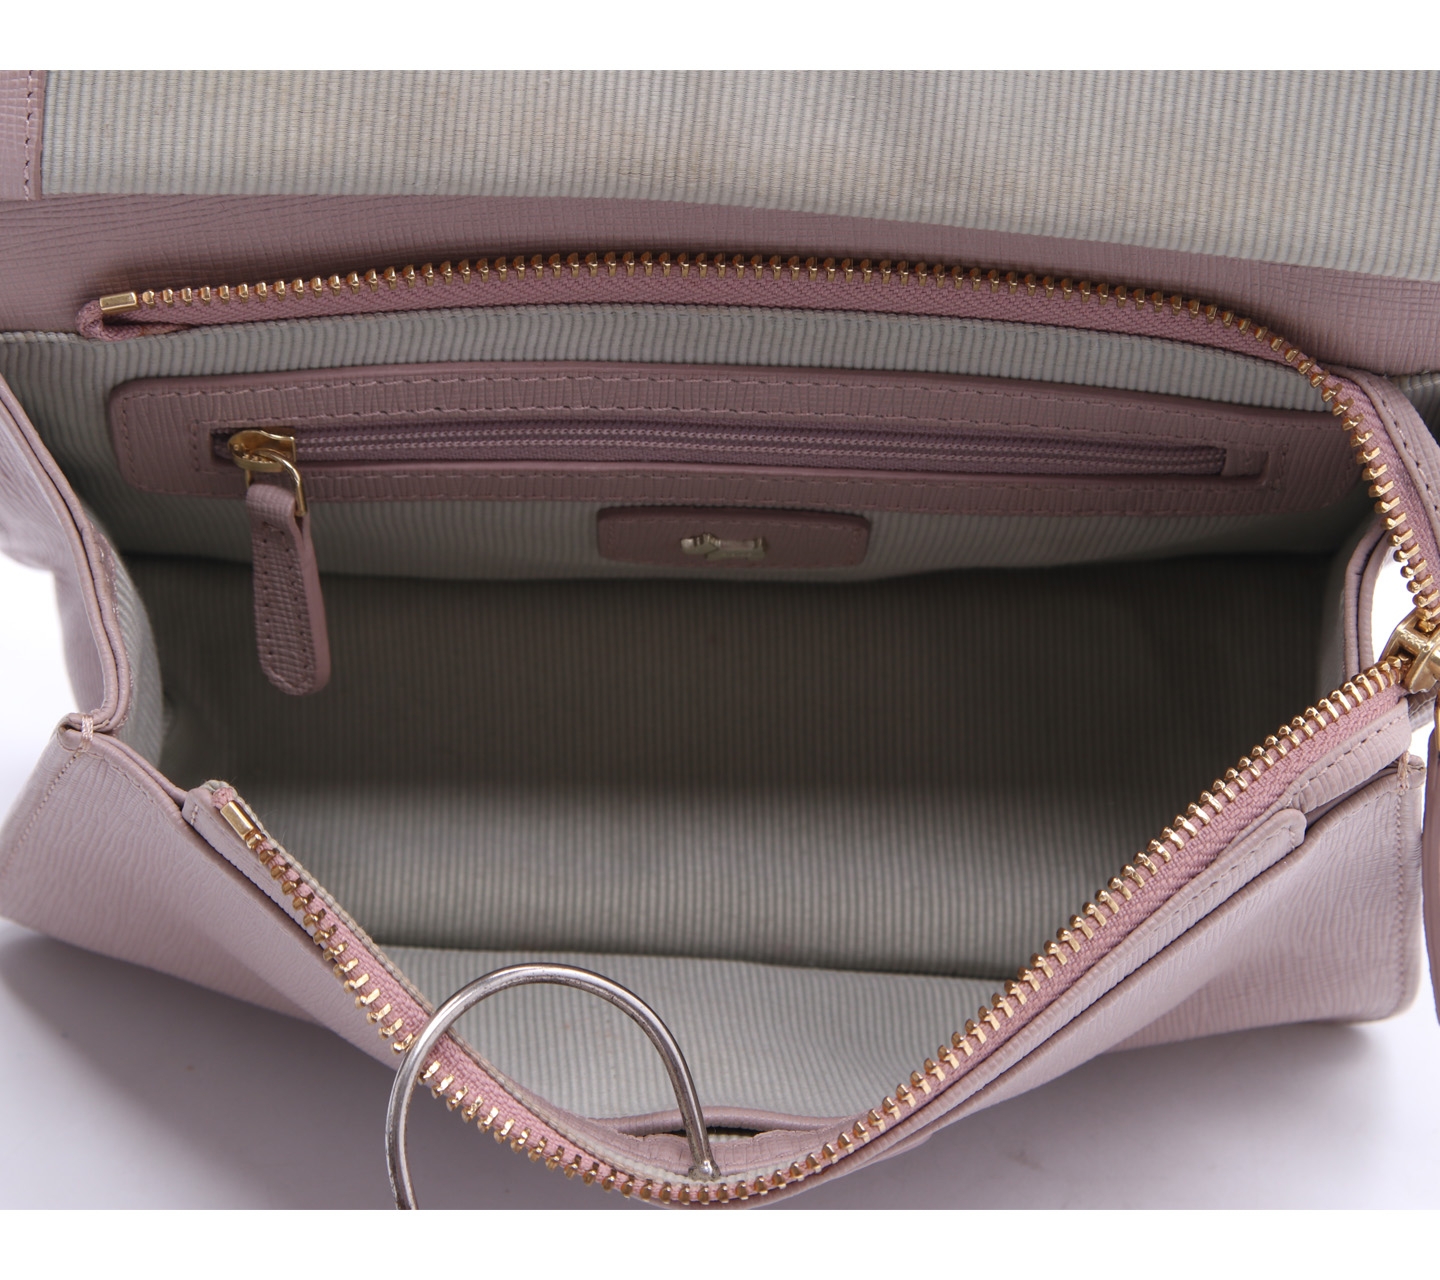 Radley Lilac Leather Sling Bag